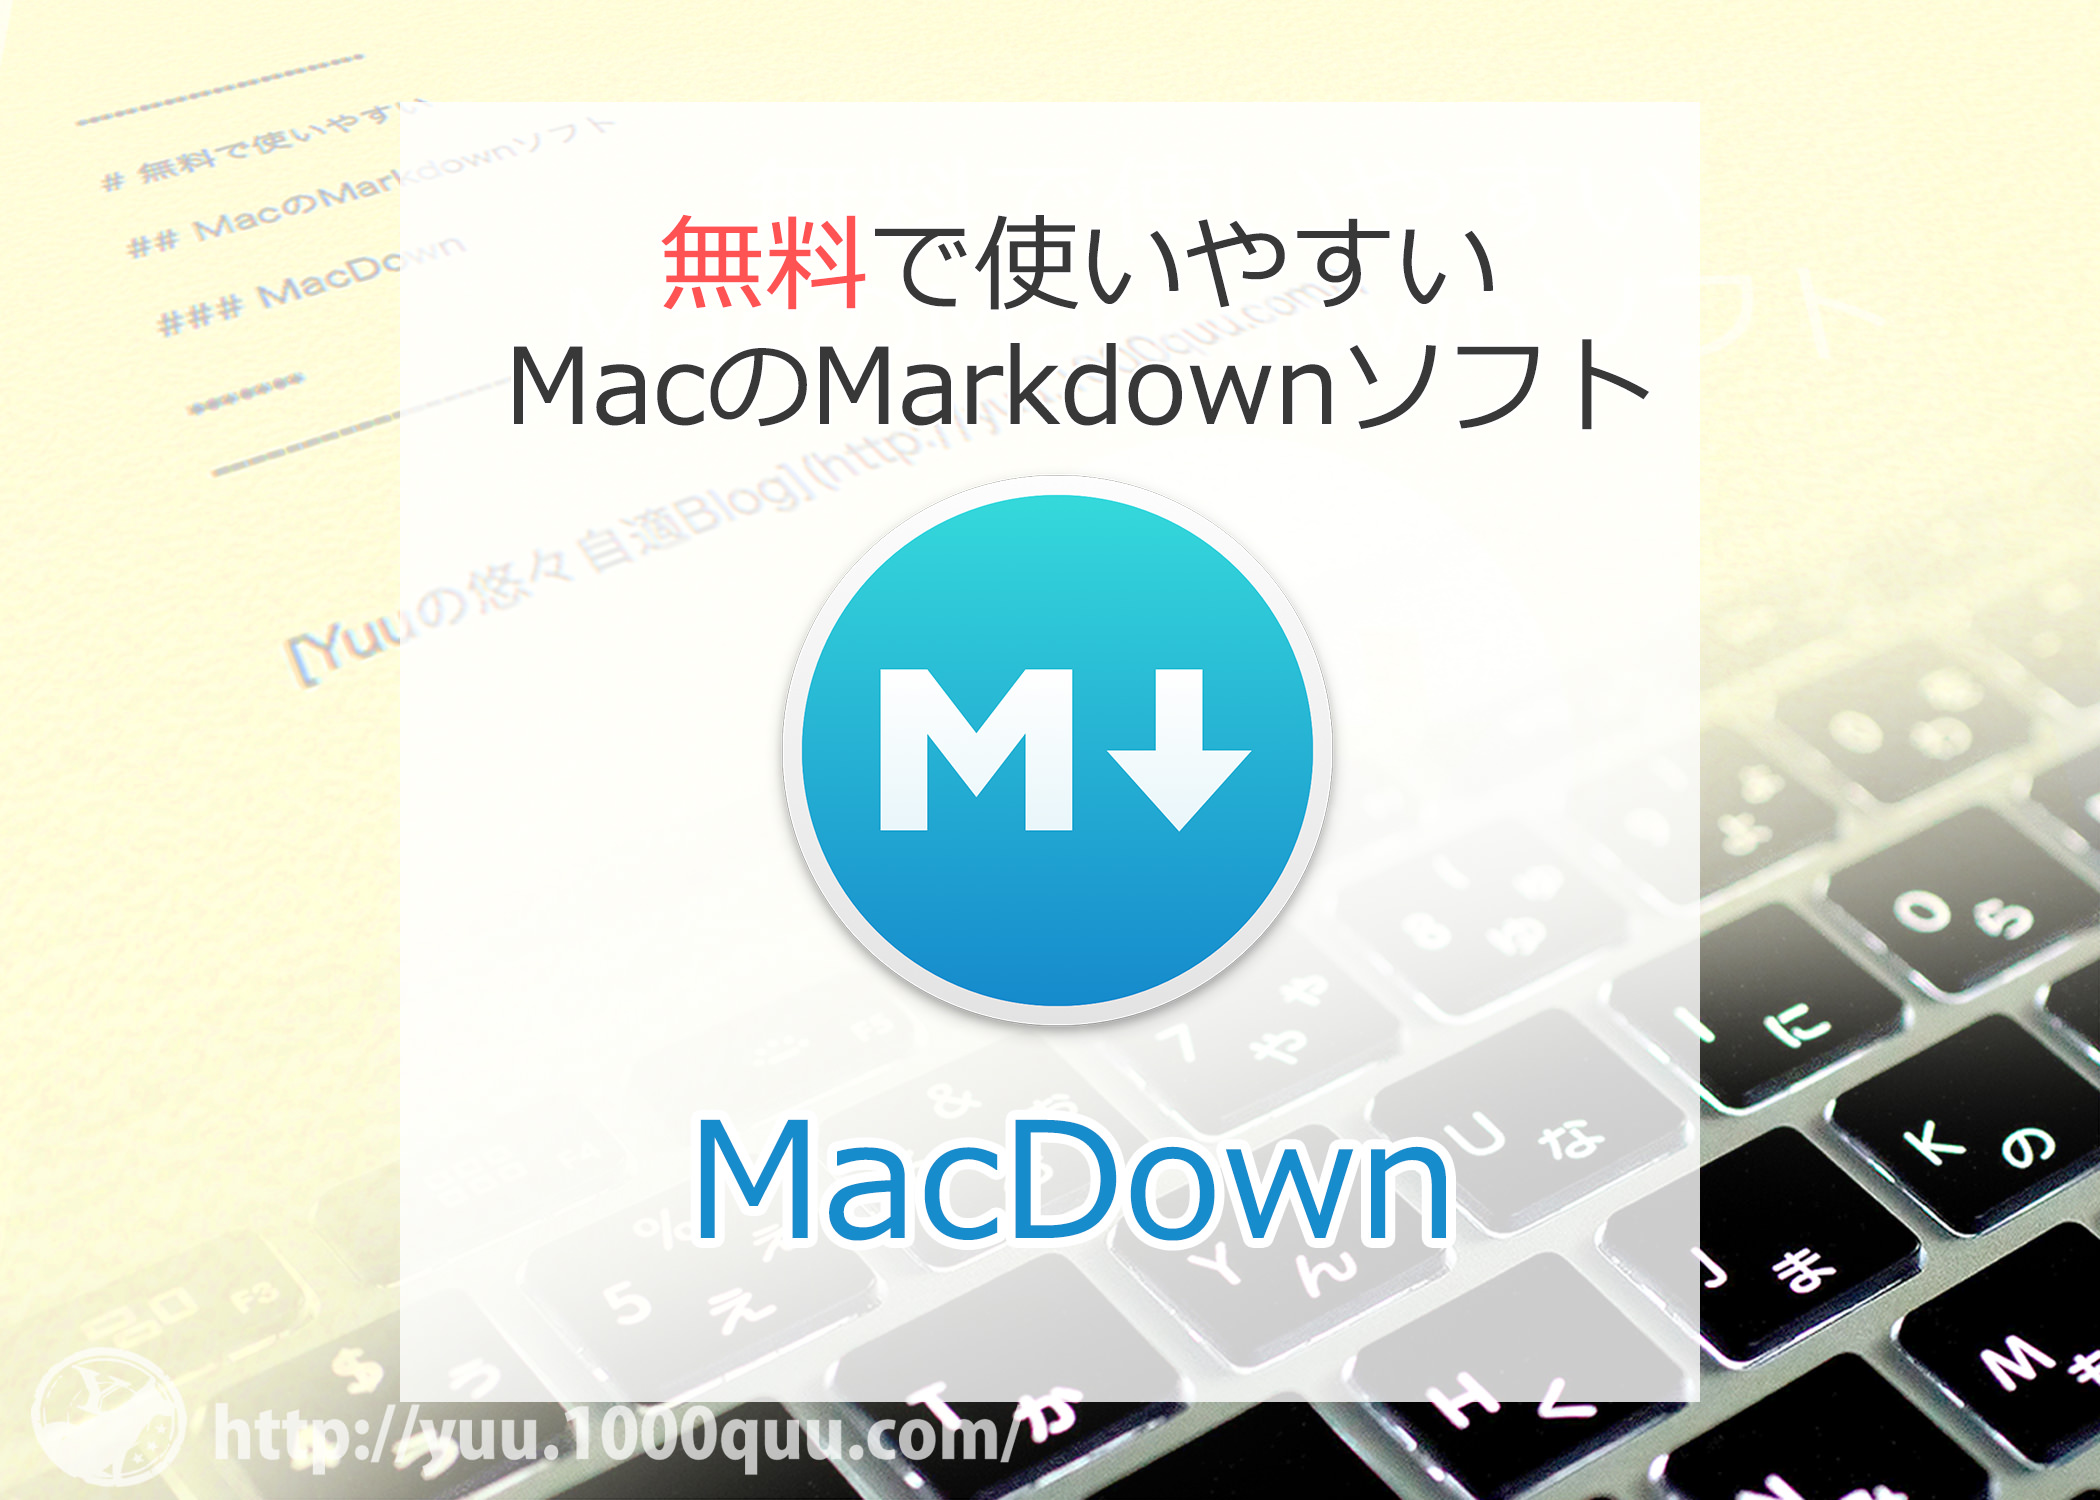 無料 Macでmarkdownならこれしかない Macアプリmacdown Yuuの悠々自適blog